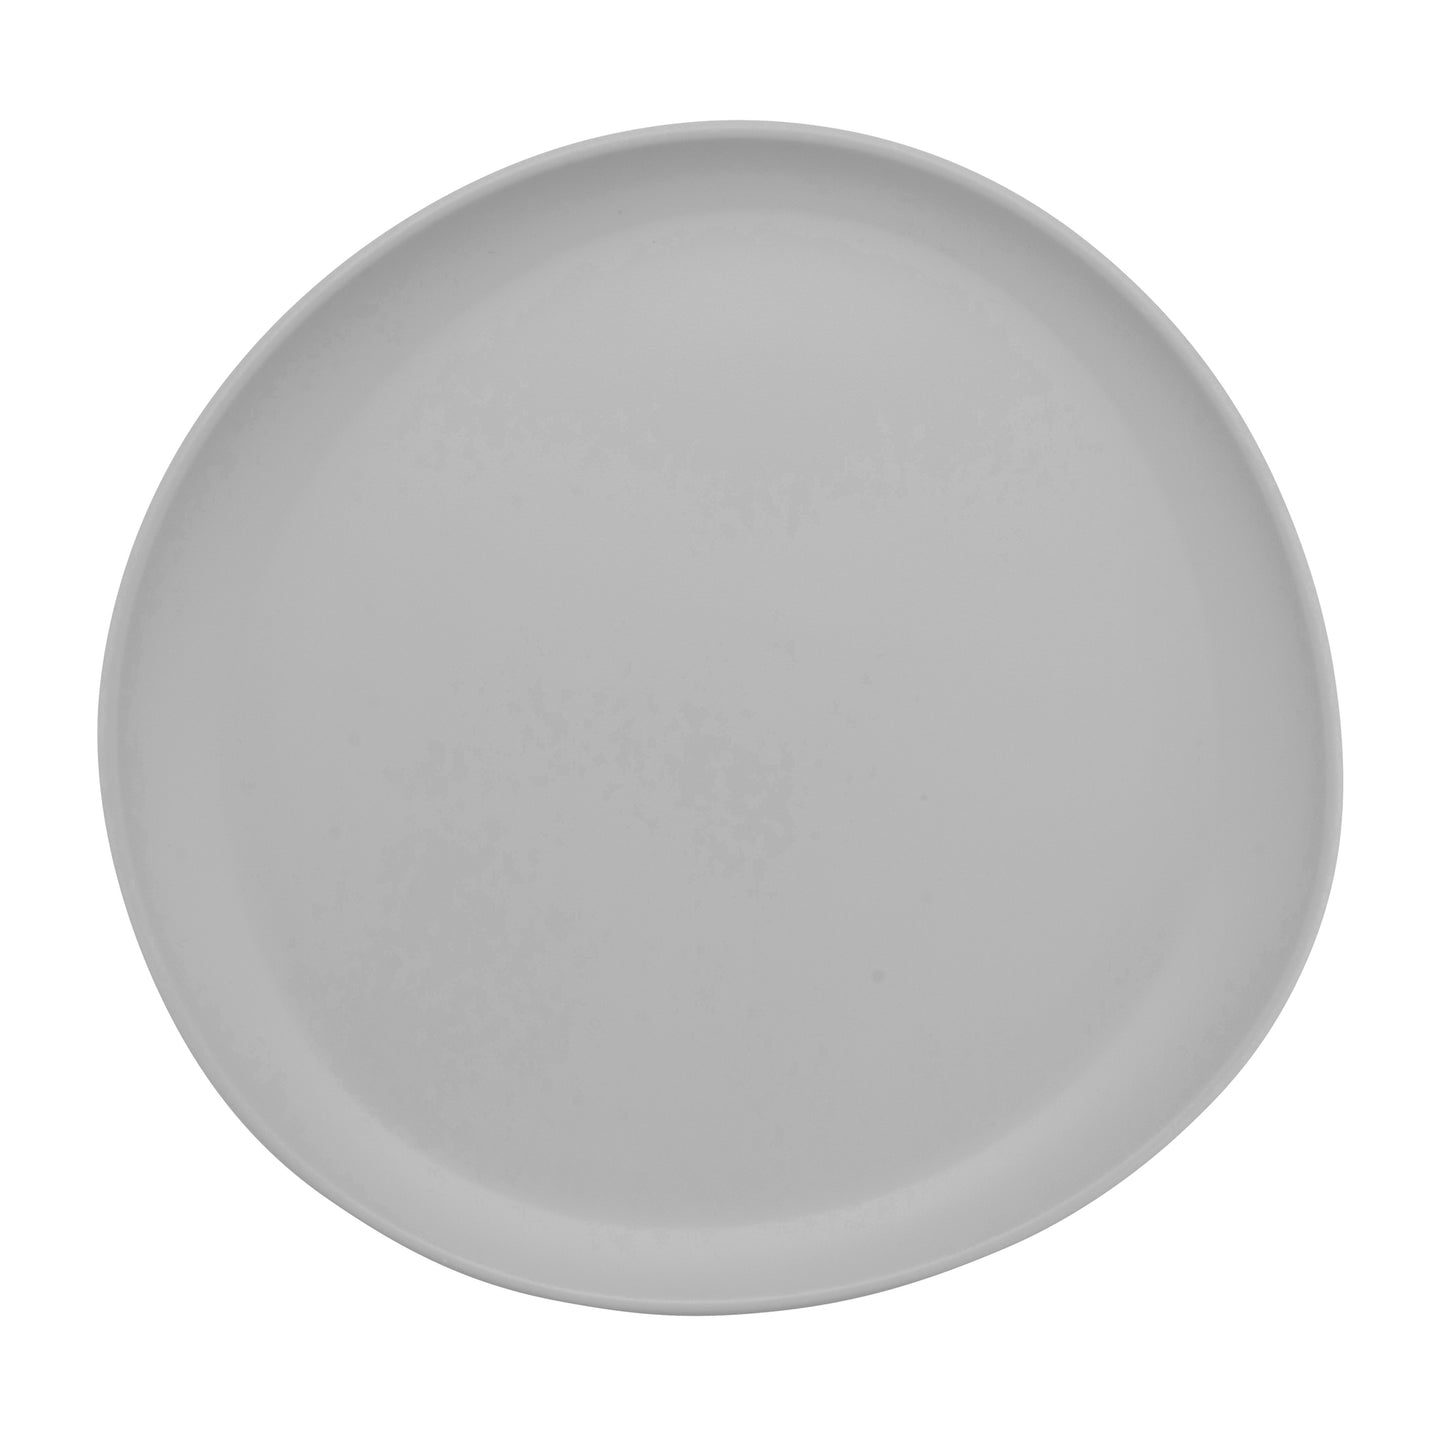 10.6" Light Gray, Melamine, Round Coupe Dinner Plate, G.E.T. Riverstone (12 Pack)